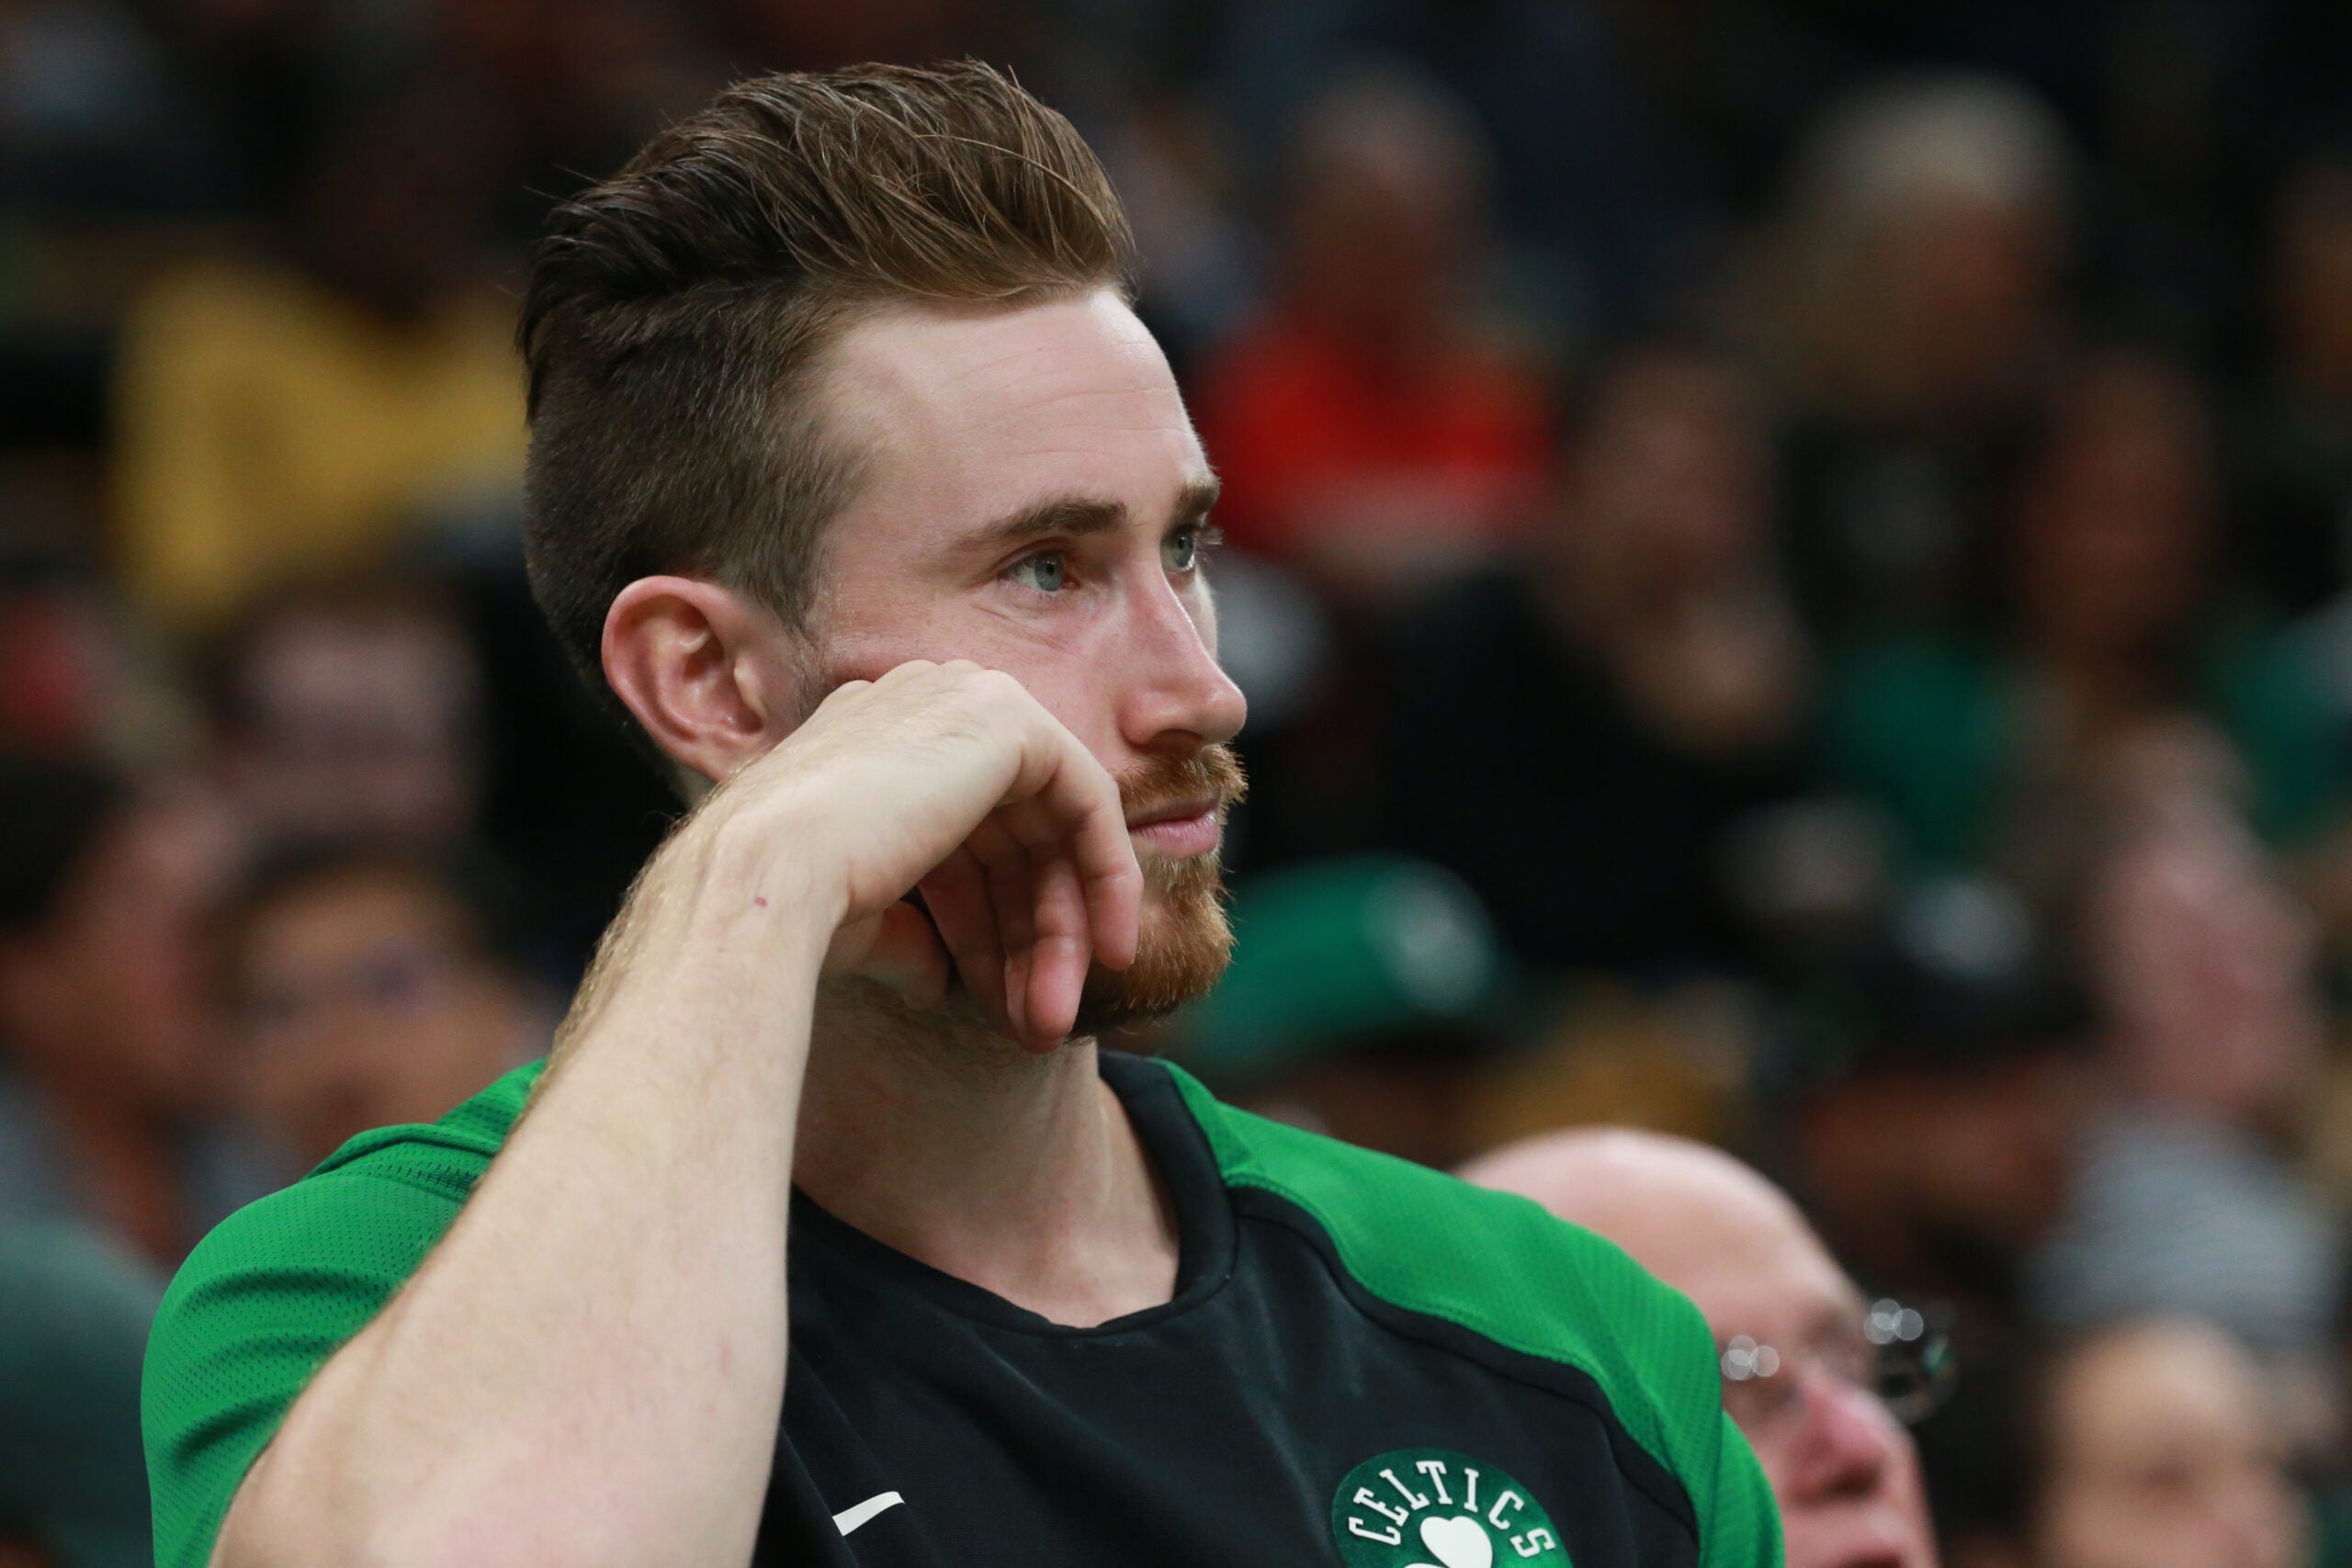 Gordon Hayward regaining form in return from injury - CelticsBlog